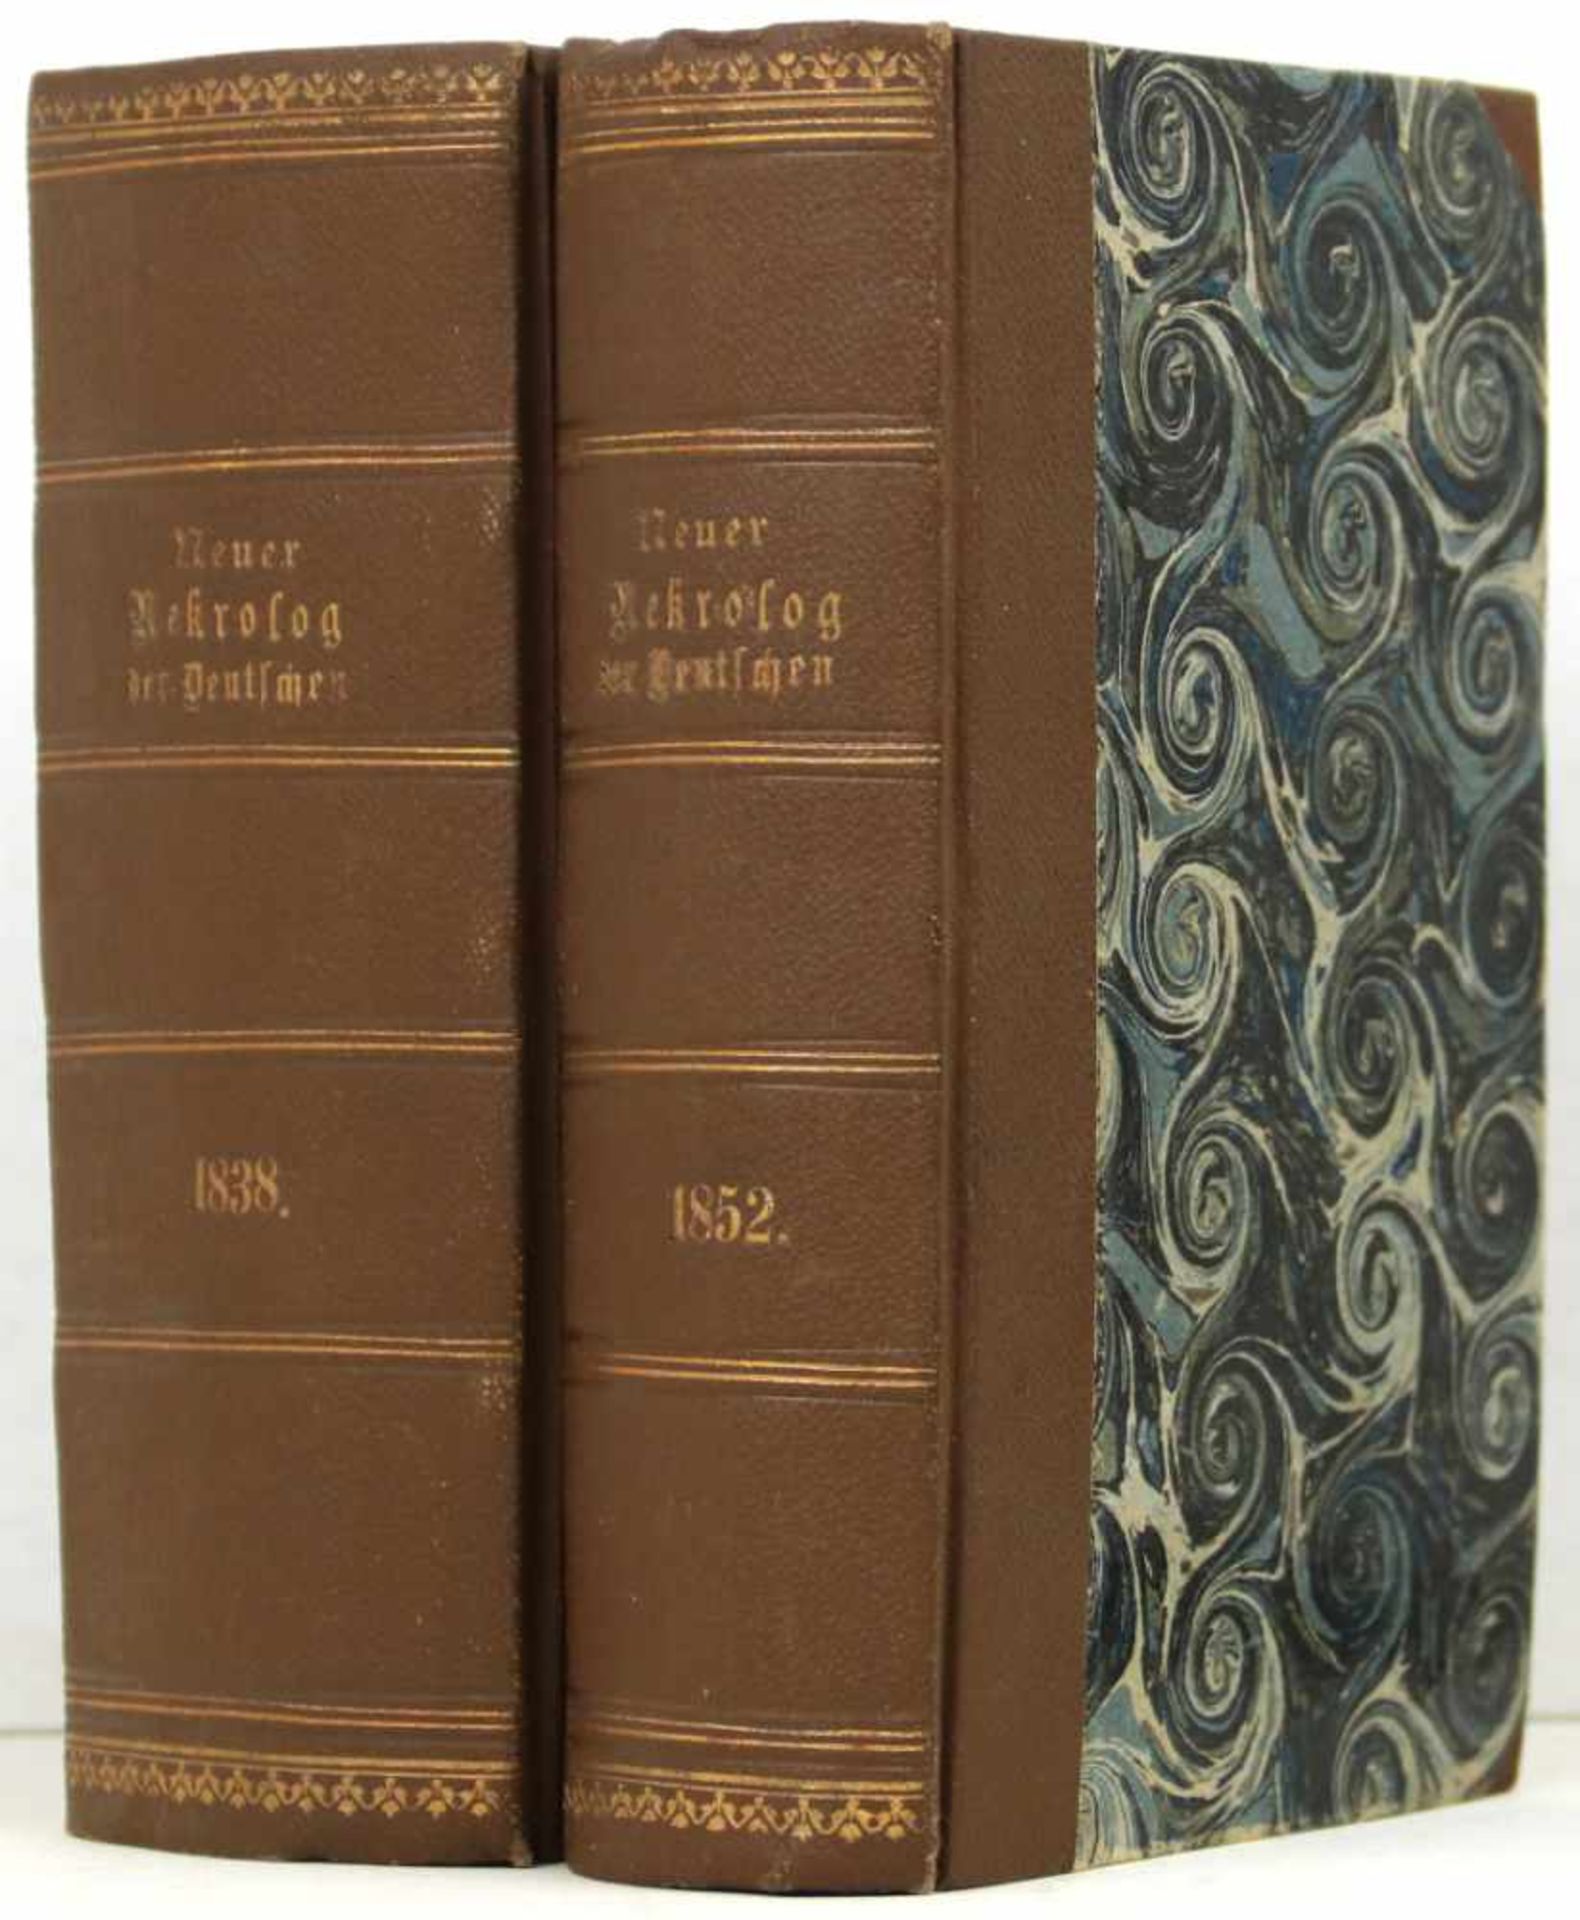 Neuer Nekrolog der Deutschen. Jahrgang 16 auf 1838 und Jahrgang 30 auf 1852, jeweils 2 Teile in